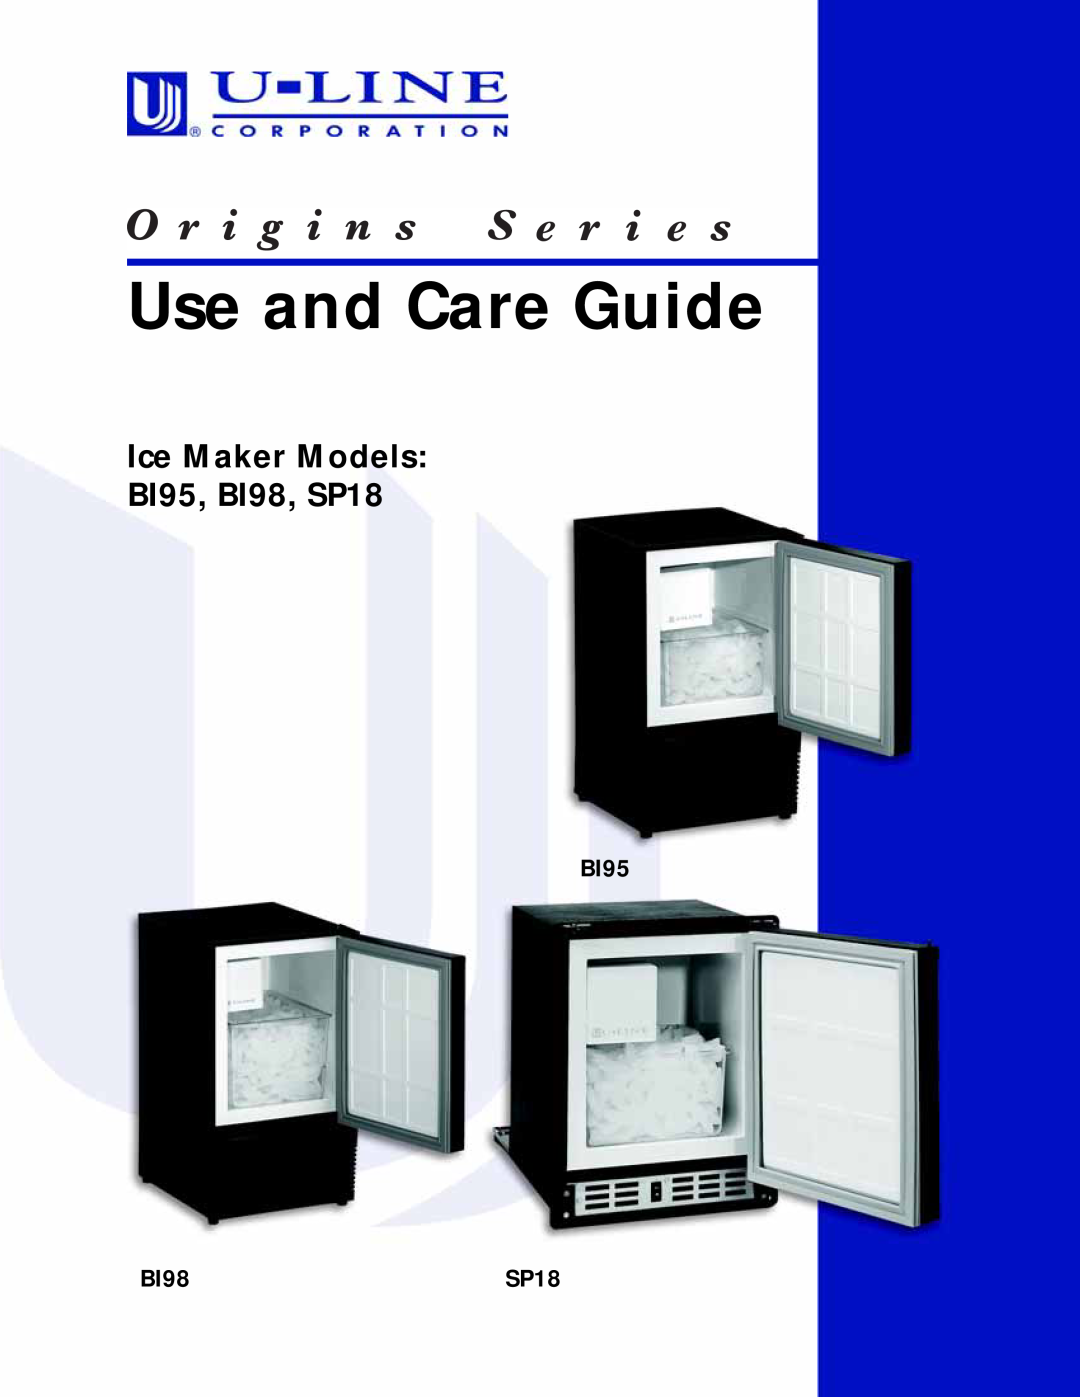 U-Line manual Use and Care Guide, Ice Maker Models BI95, BI98, SP18 